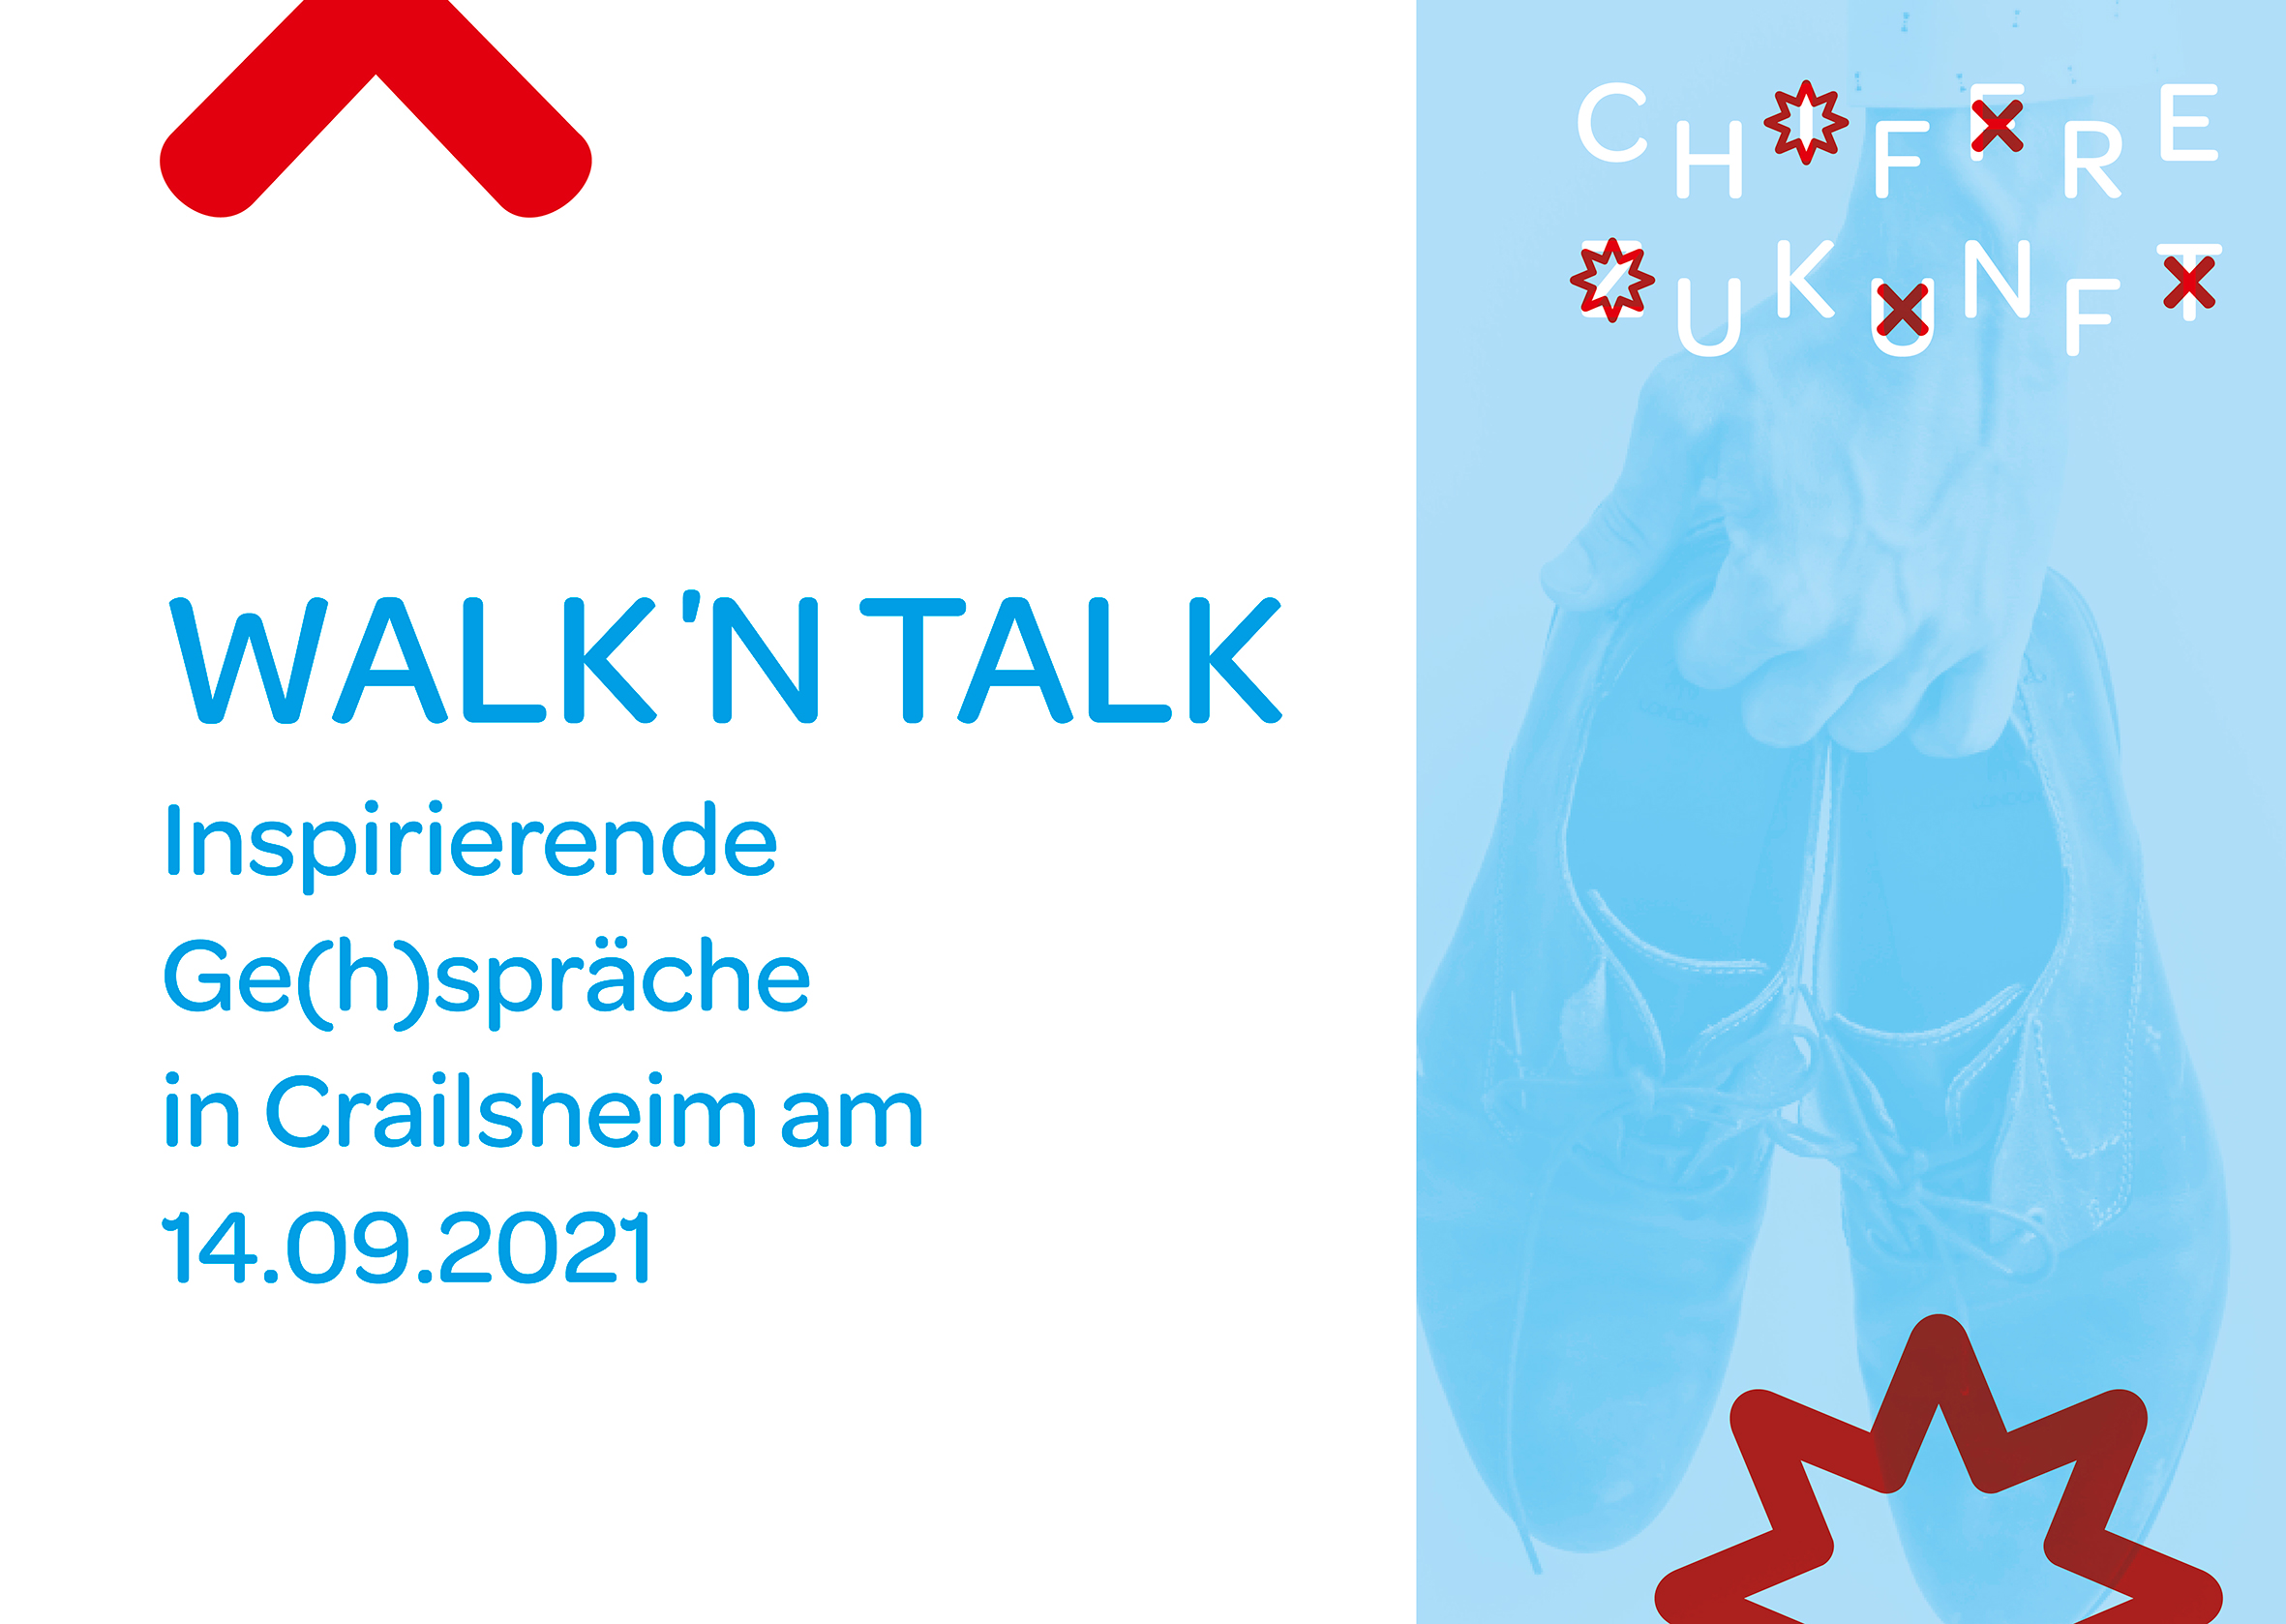 Das Bild zeigt die Informationen zur Veranstaltung mit dem Titel Walk' n Talk für Unternehmen und Selbständige, Inspirierende Ge(h)spräche in Crailsheim am 14.09.2021. Zudem zeigt es eine Hand, die ein paar Schuhe hält.